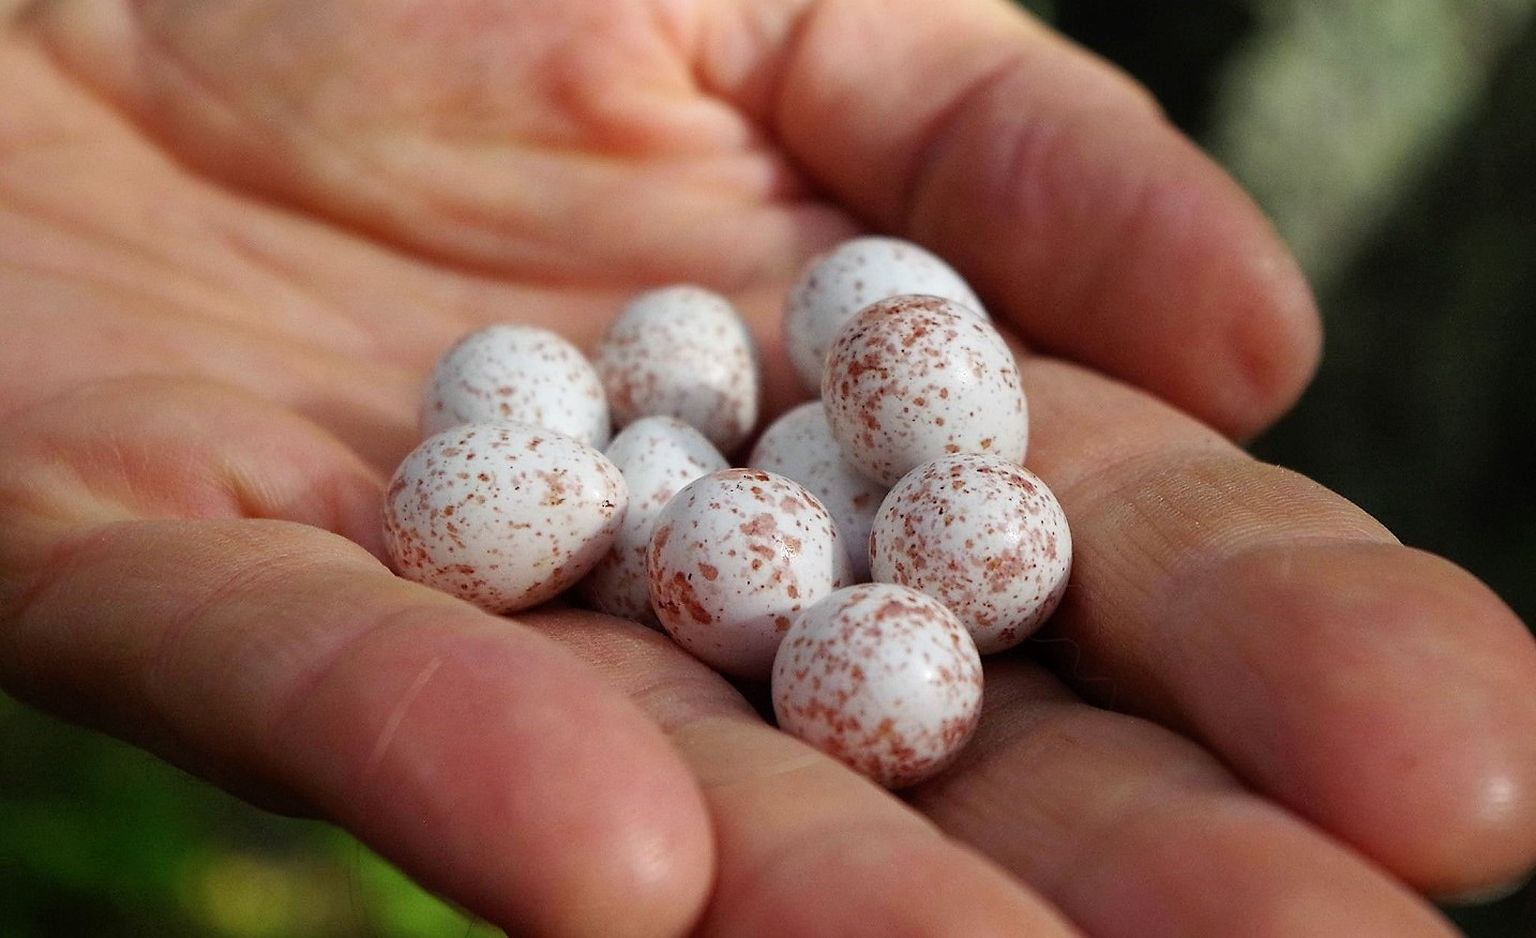 Linnuökoloog Marko Mägi peos olevad männikus pesitseva rasvatihase munad on üsna tugevalt pigmenteerunud. Kas see võib olla märk kaltsiumipuudusest?